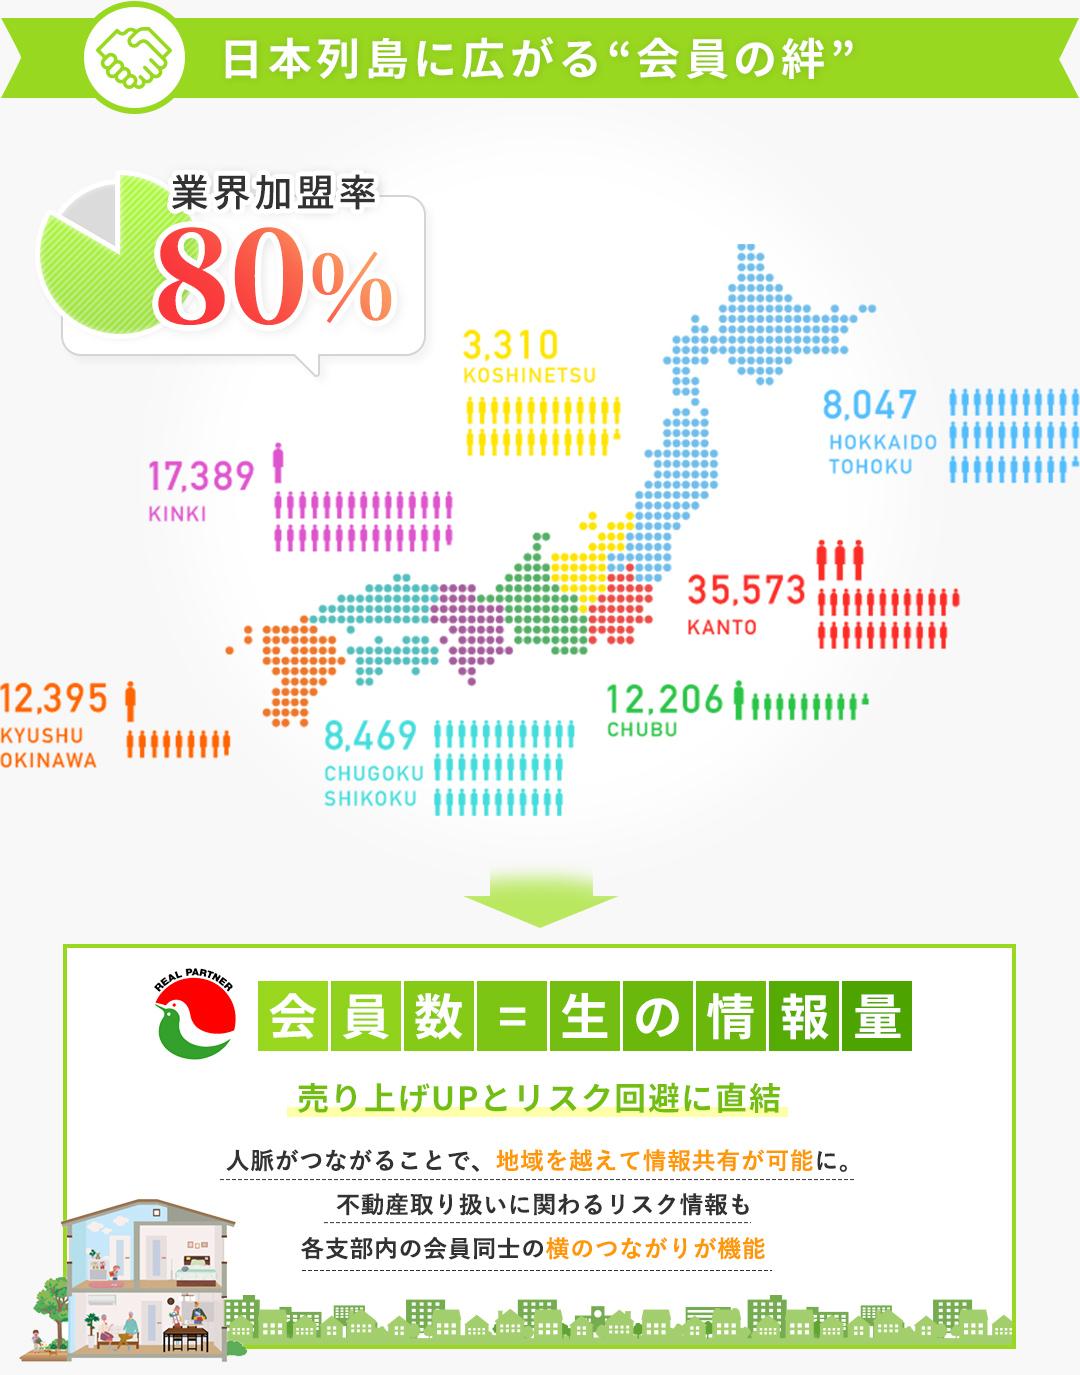 日本列島に広がる会員の絆 業界加入率80%